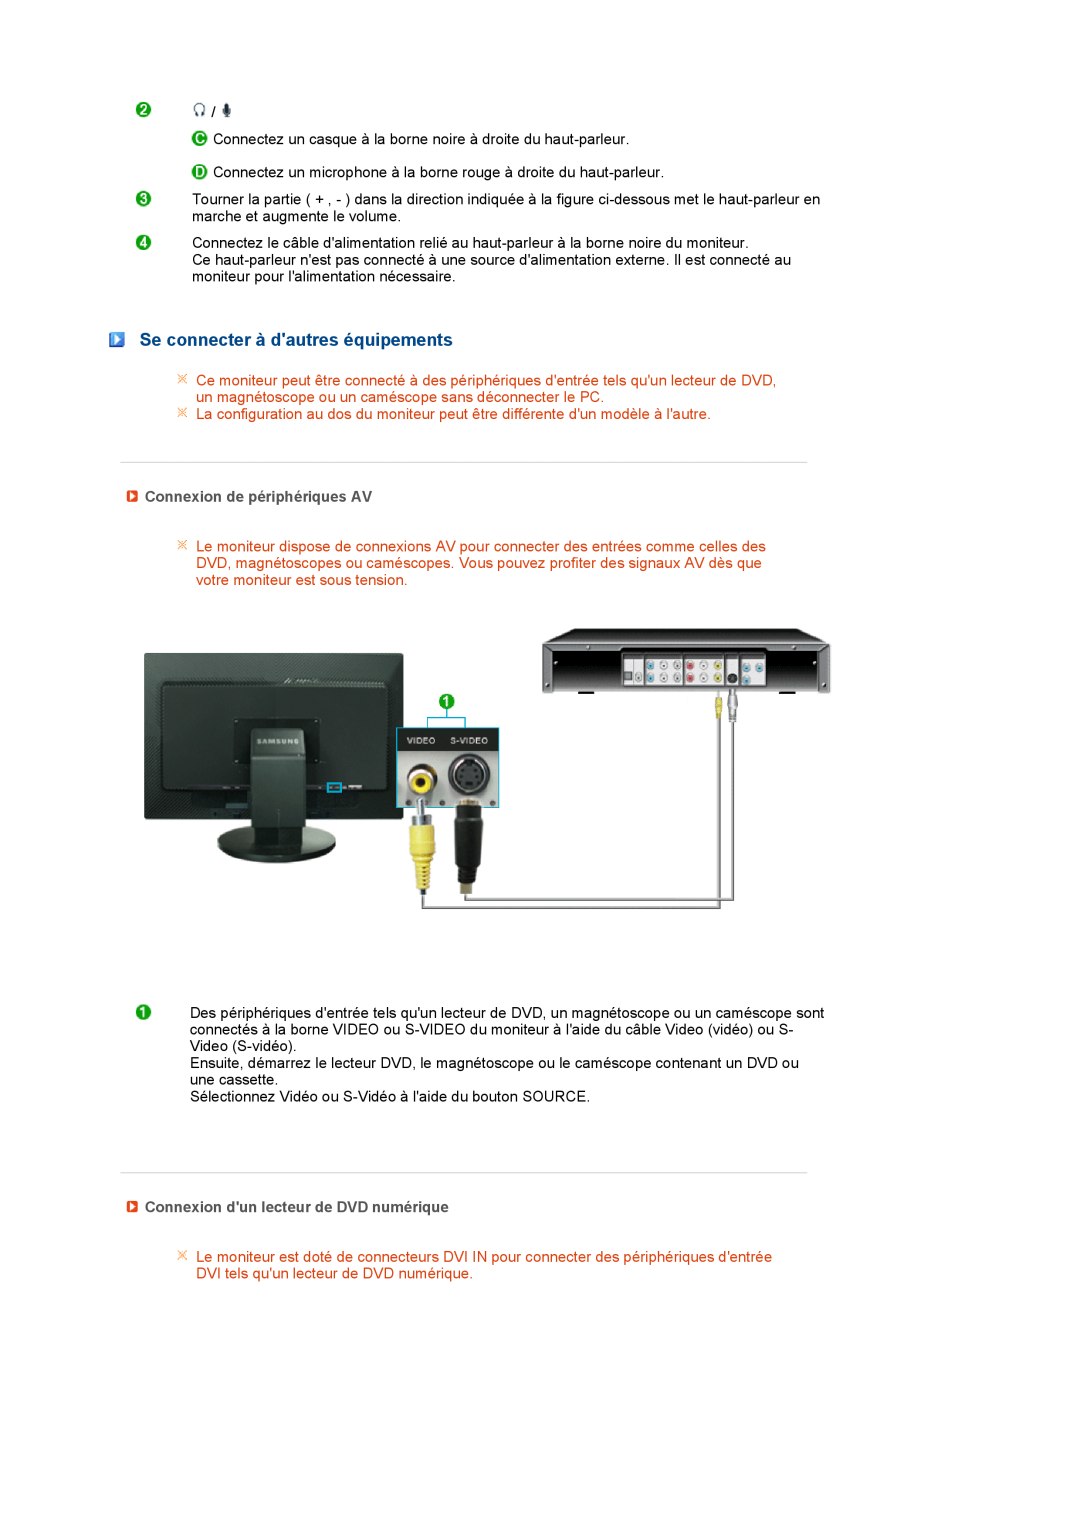 Samsung LS27HUBCBS/EDC, LS27HUBCB/EDC manual Se connecter à dautres équipements, Connexion de périphériques AV 